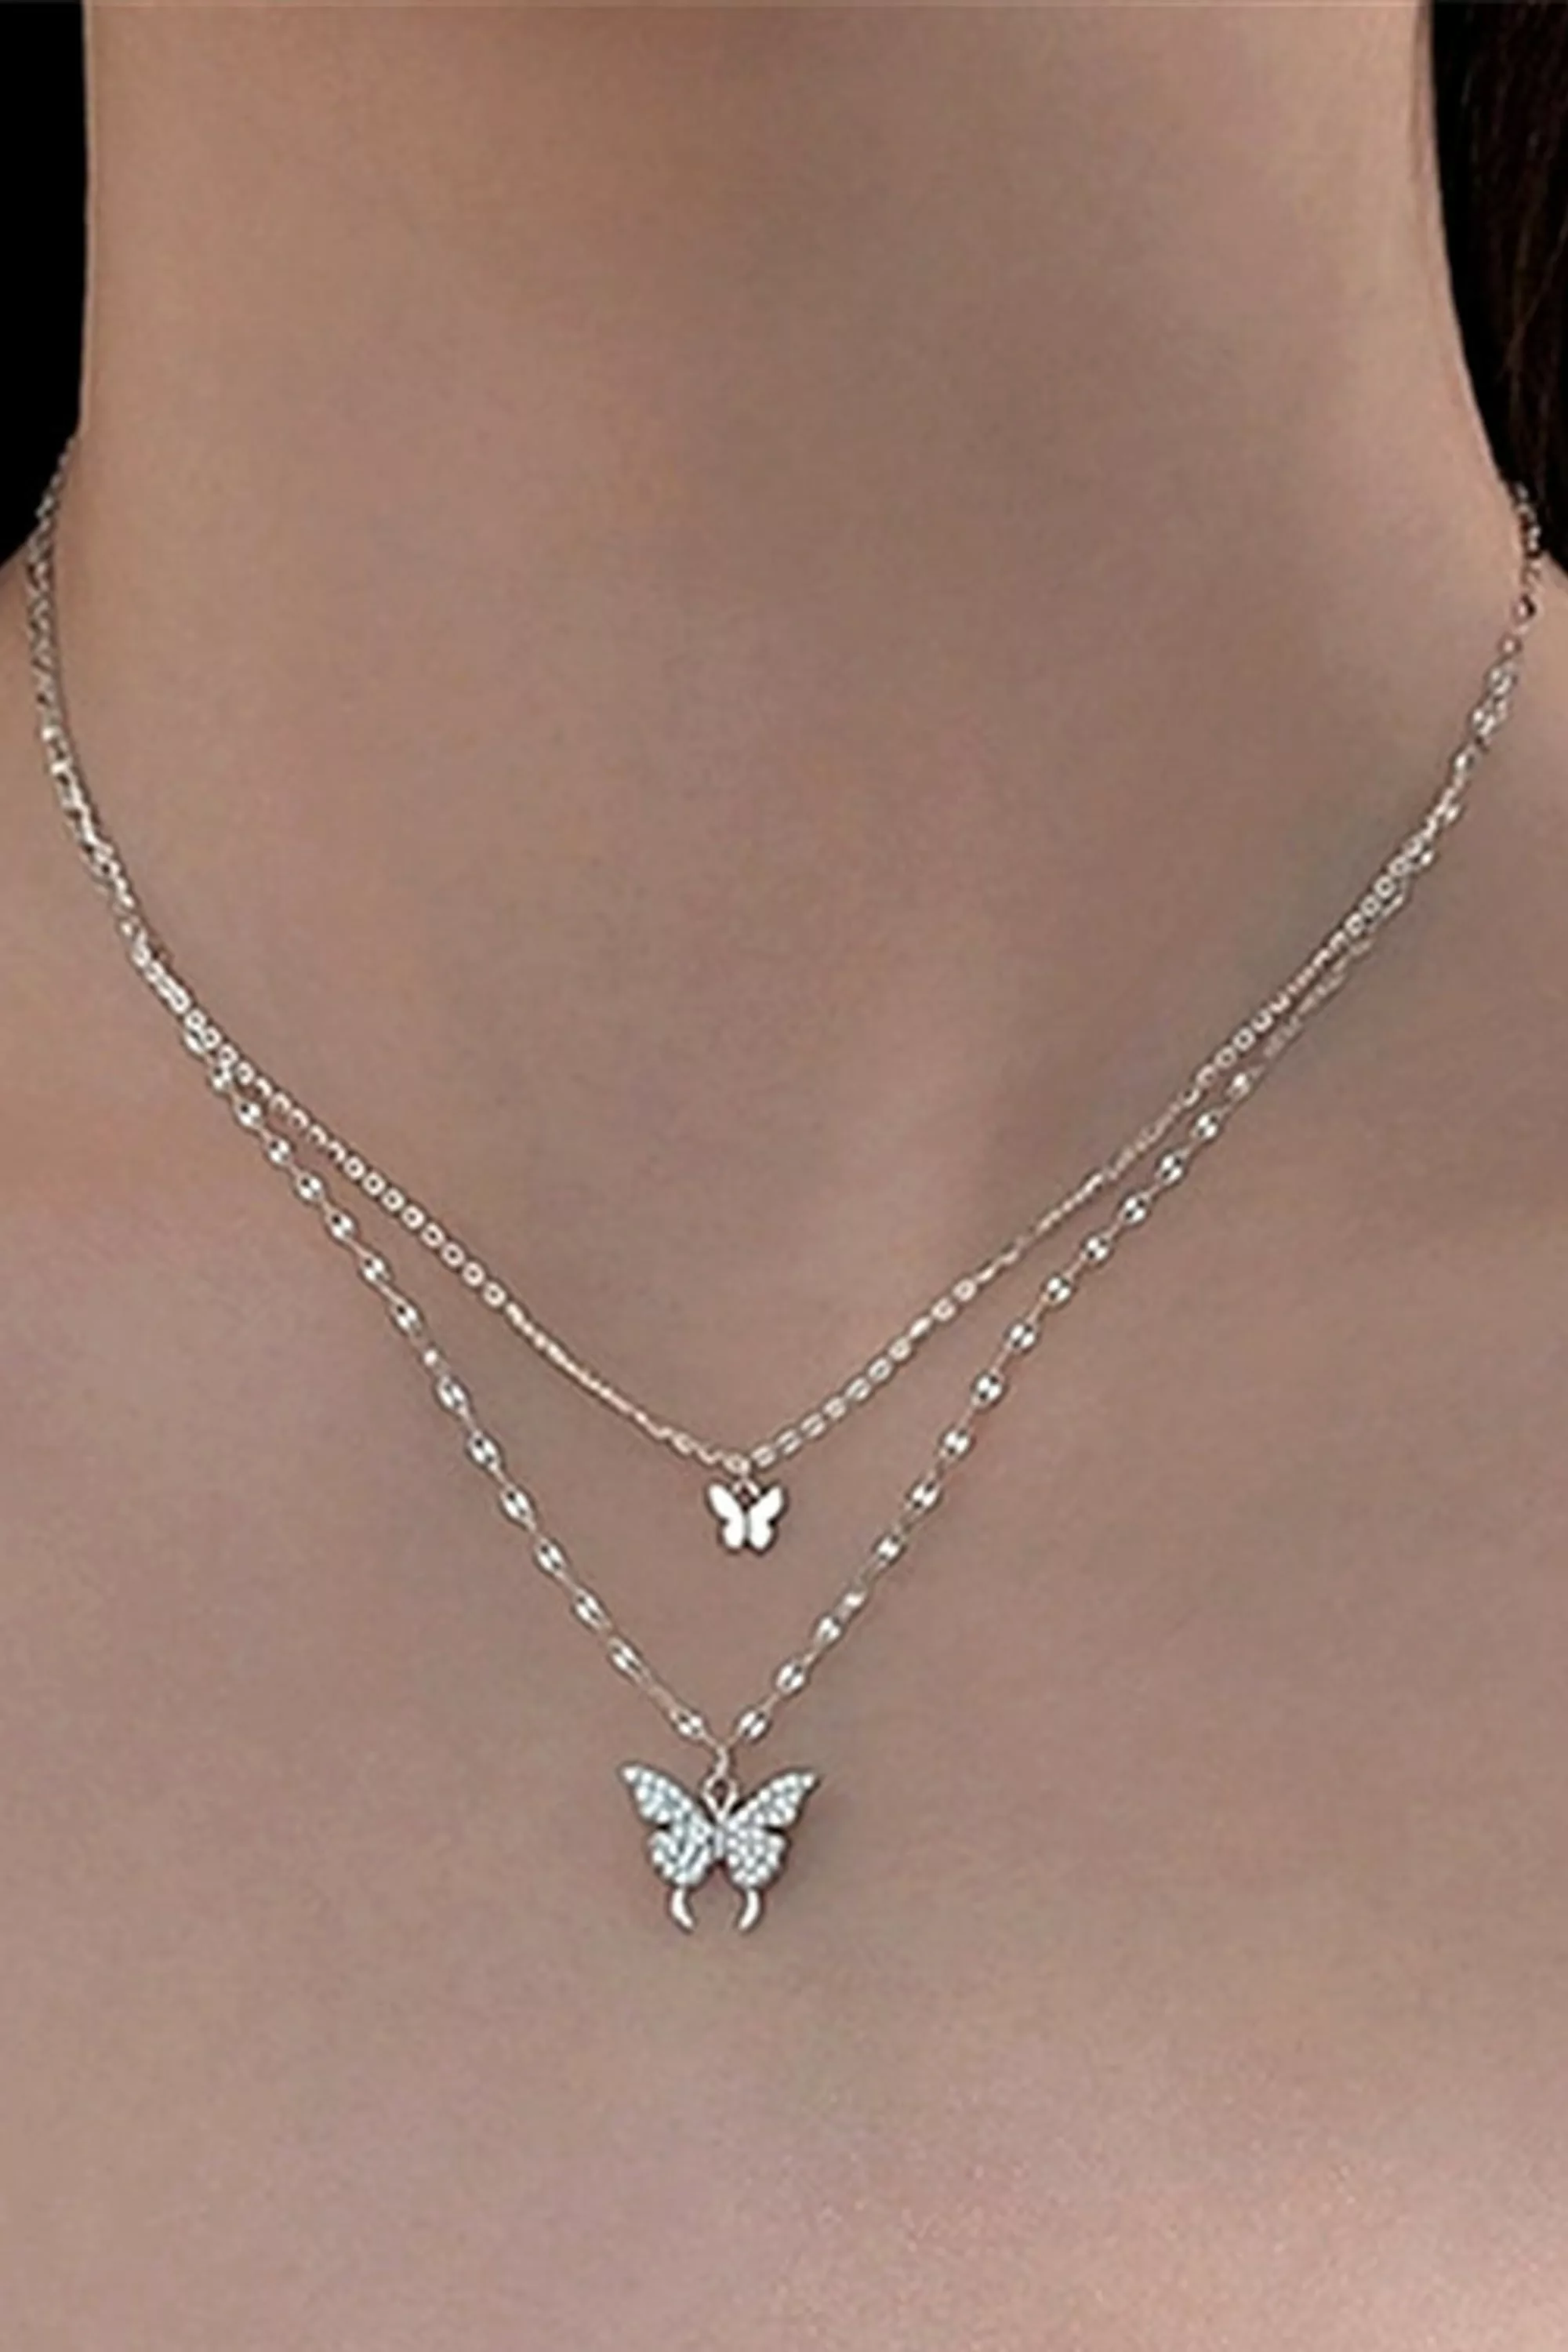 COLLEZIONE ALESSANDRO Silberkette "Butterflies" günstig online kaufen